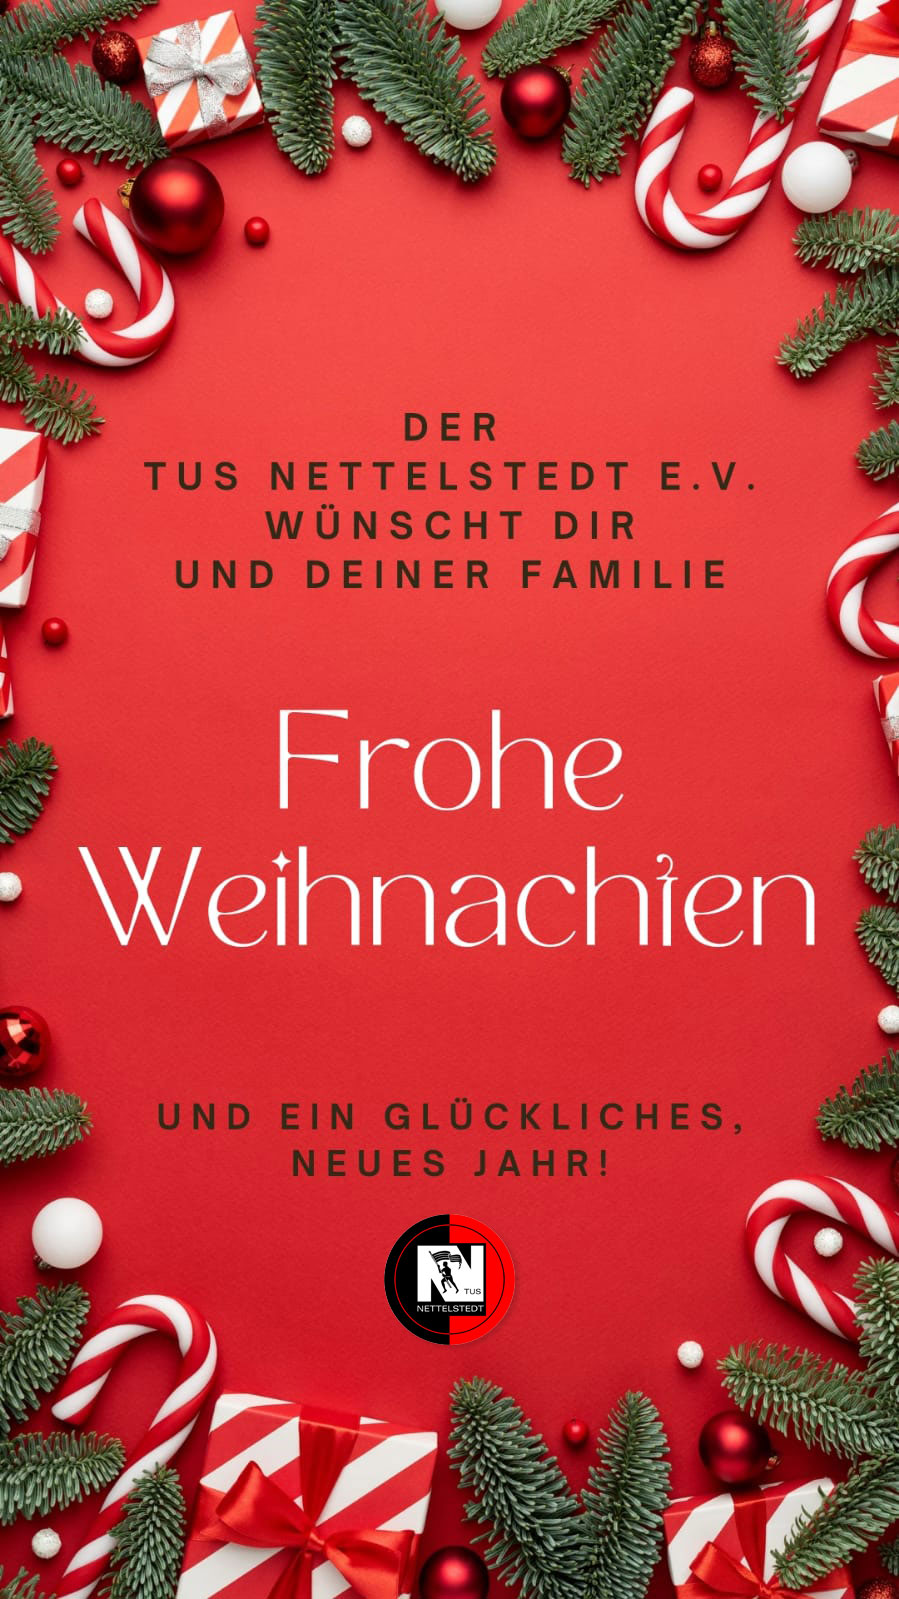 Der TuS Nettelstedt wünscht fröhliche Weihnachten!